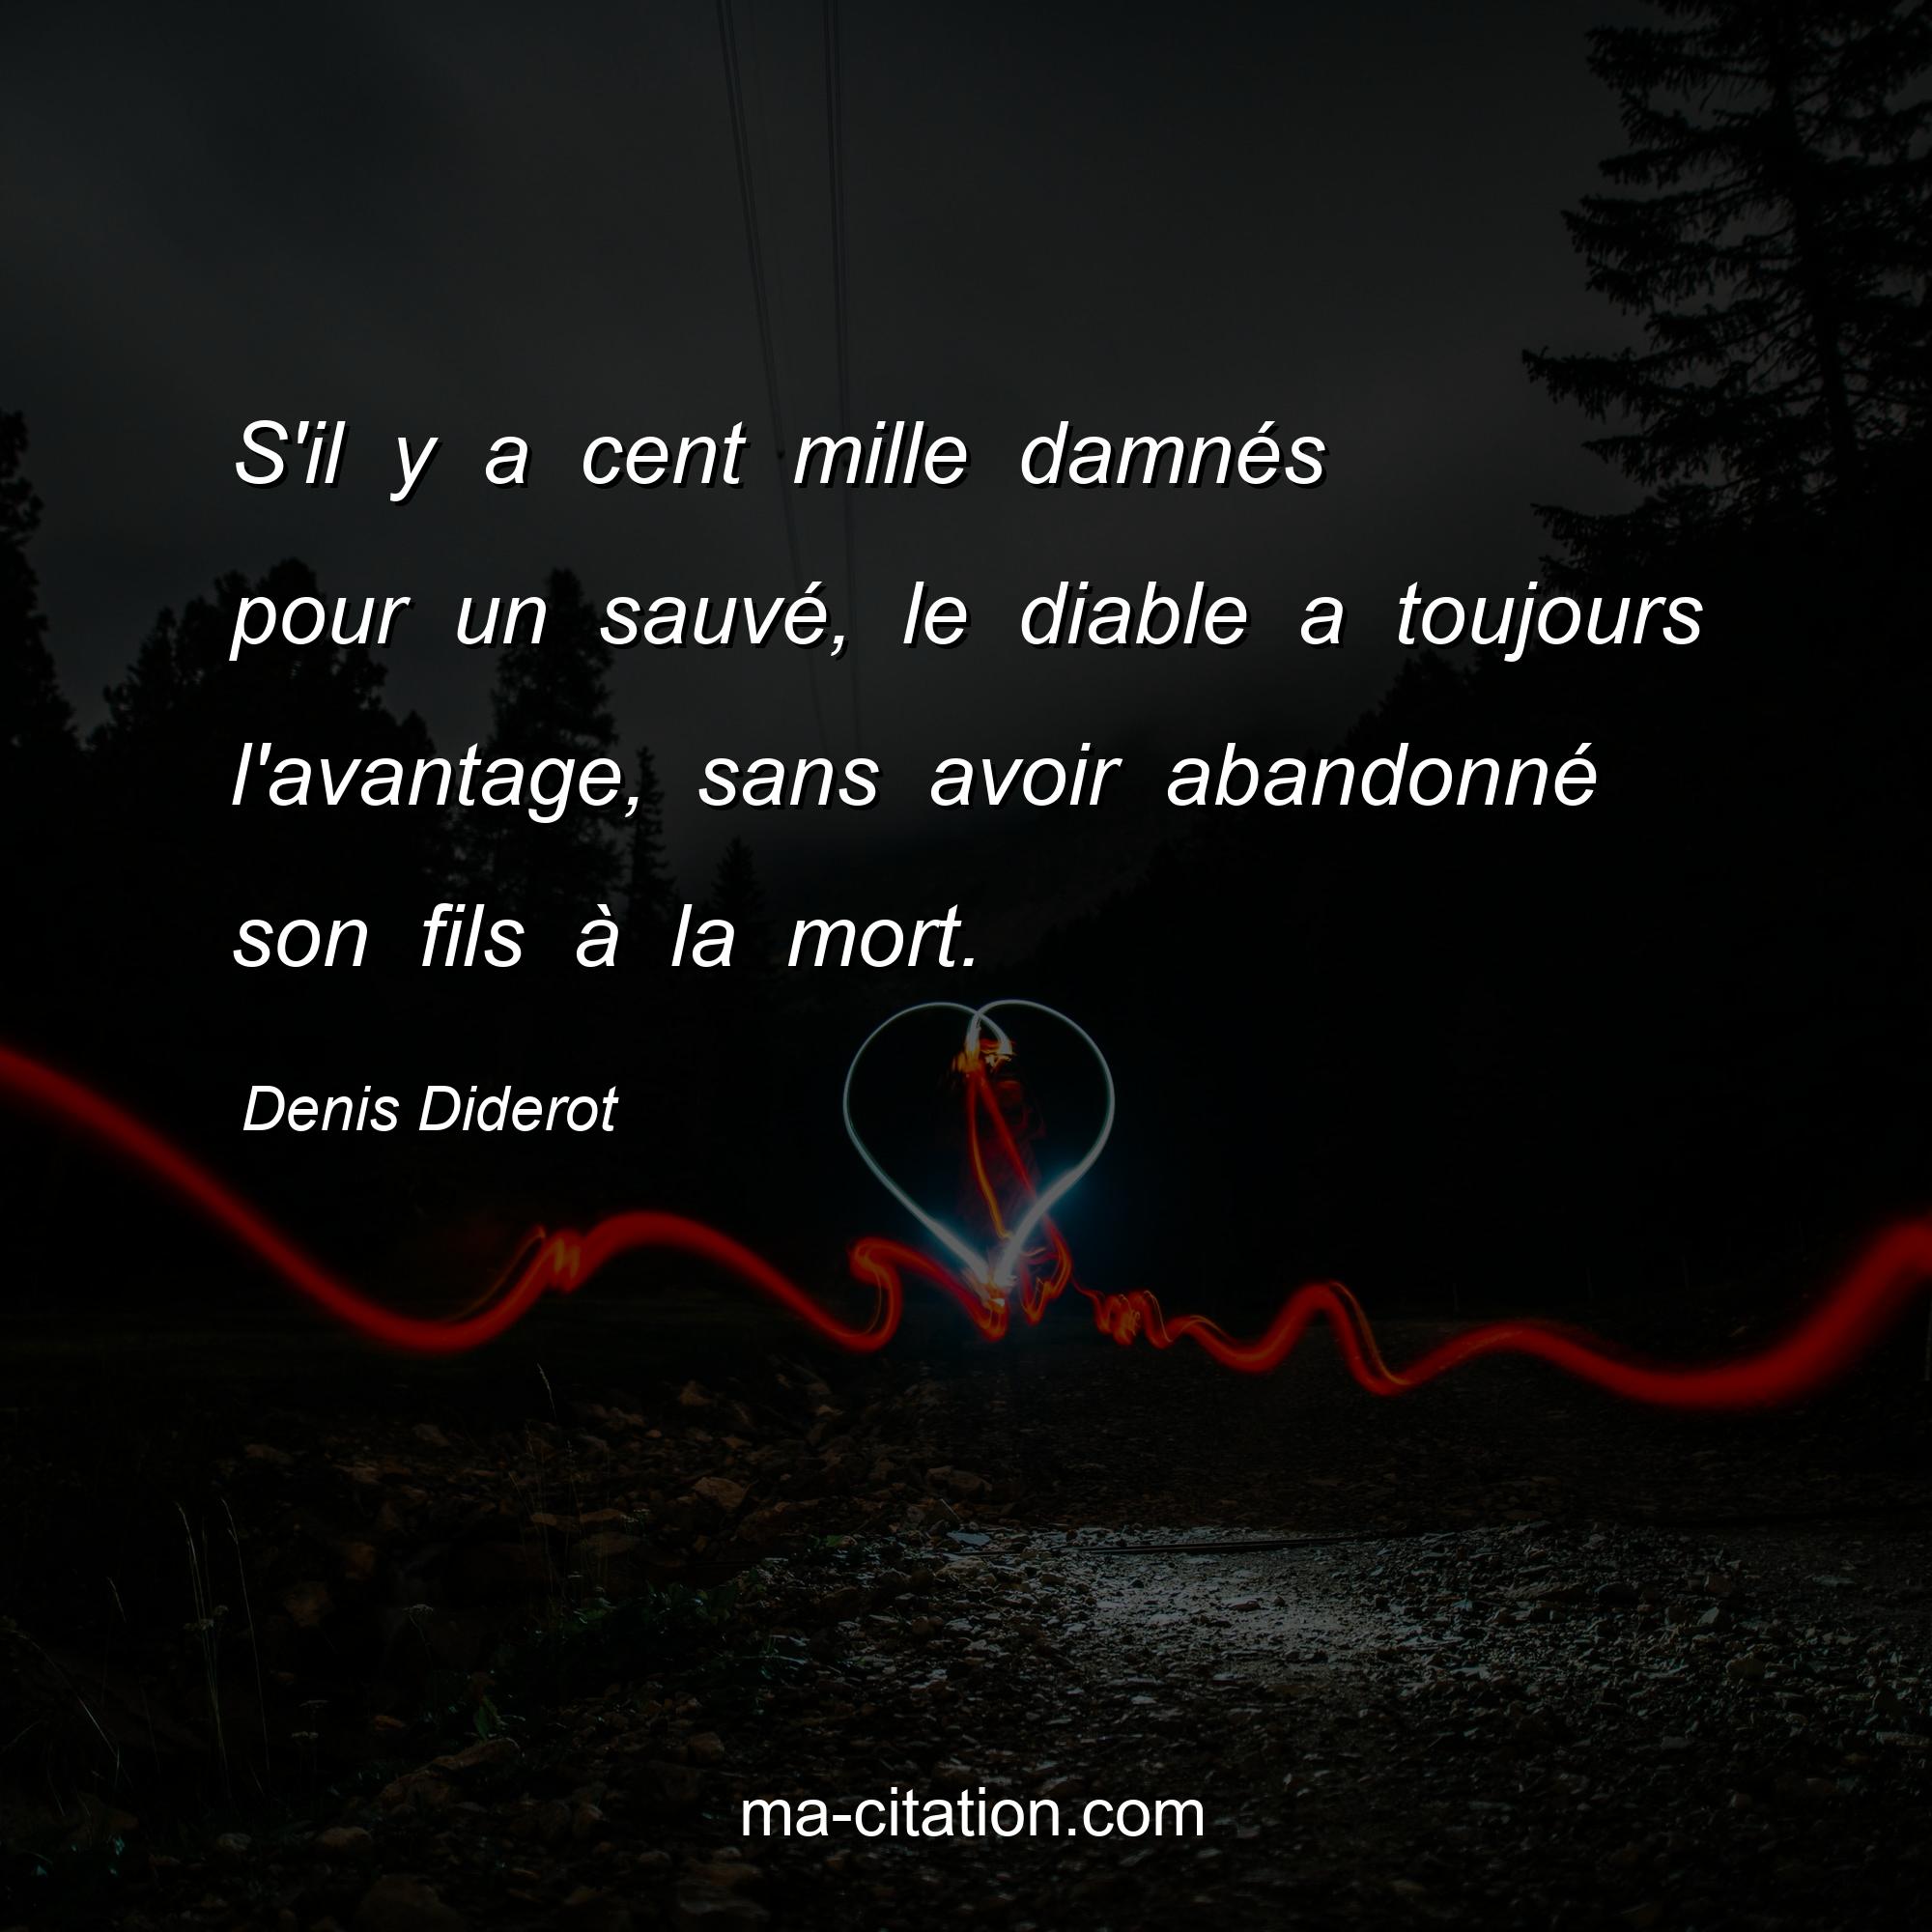 Denis Diderot : S'il y a cent mille damnés pour un sauvé, le diable a toujours l'avantage, sans avoir abandonné son fils à la mort.